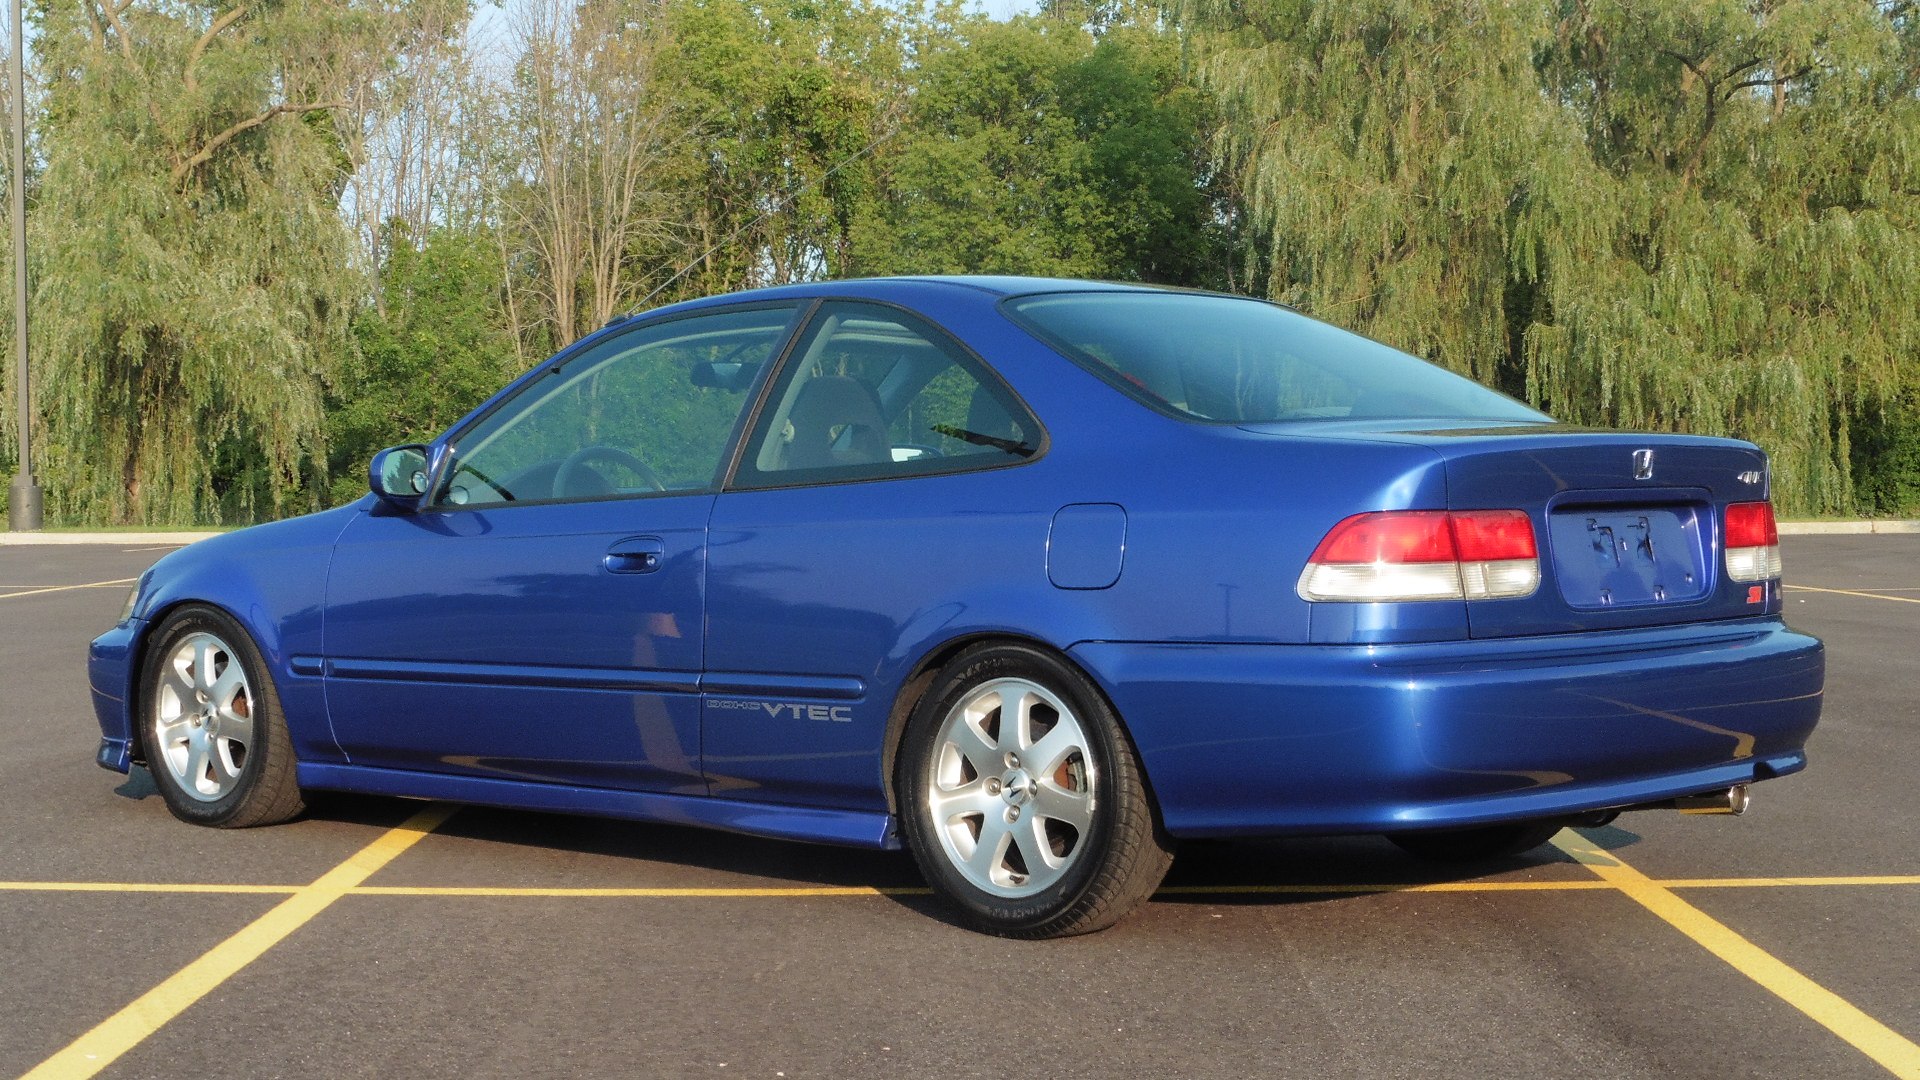 Honda civic 1999